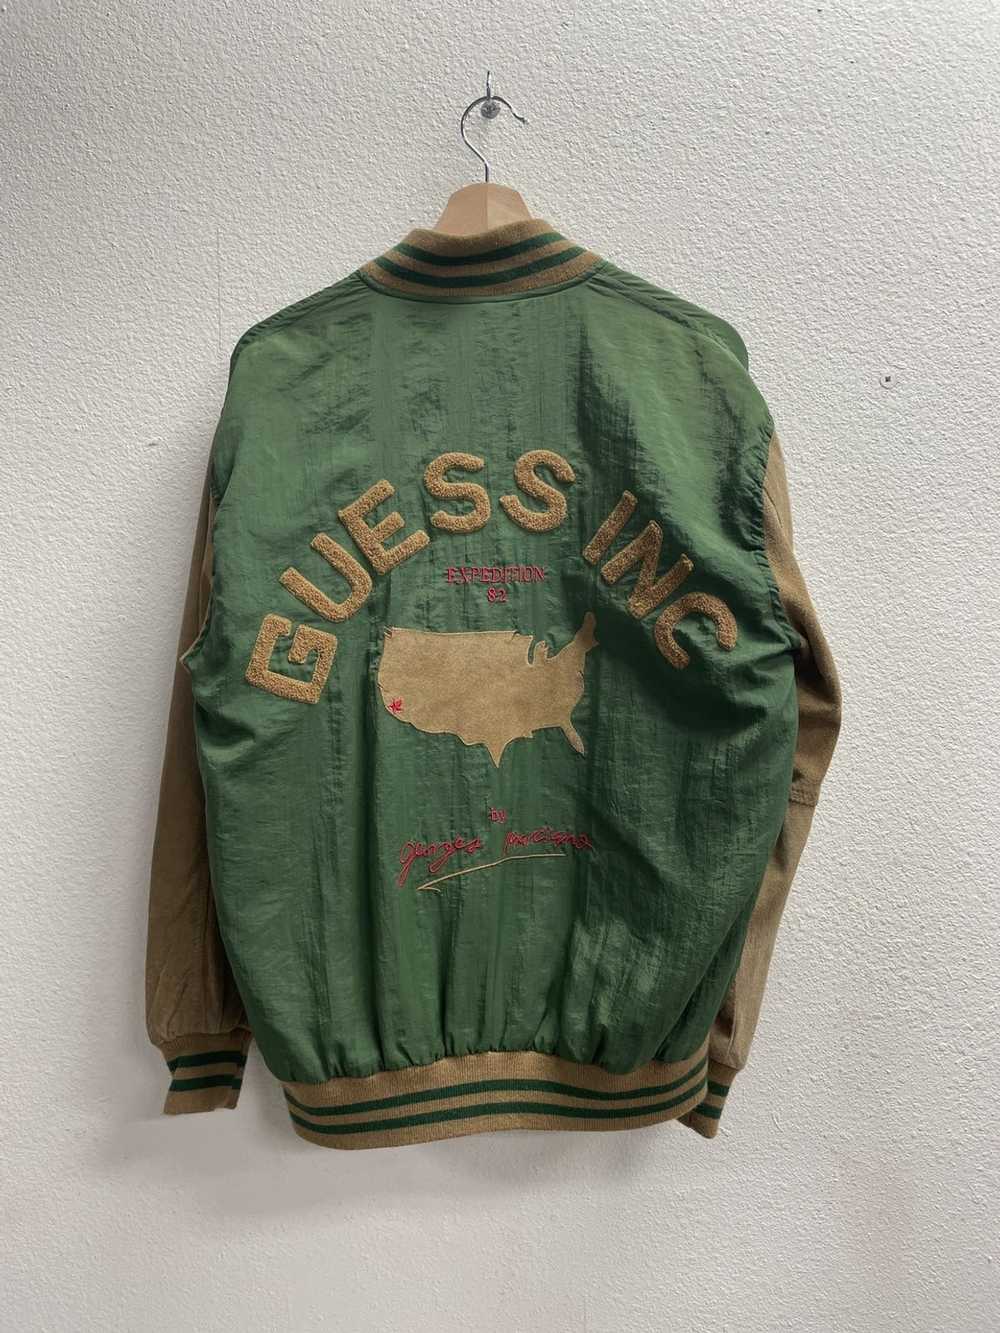 Guess × Vintage Vintage Guess Bomber Jacket - image 3